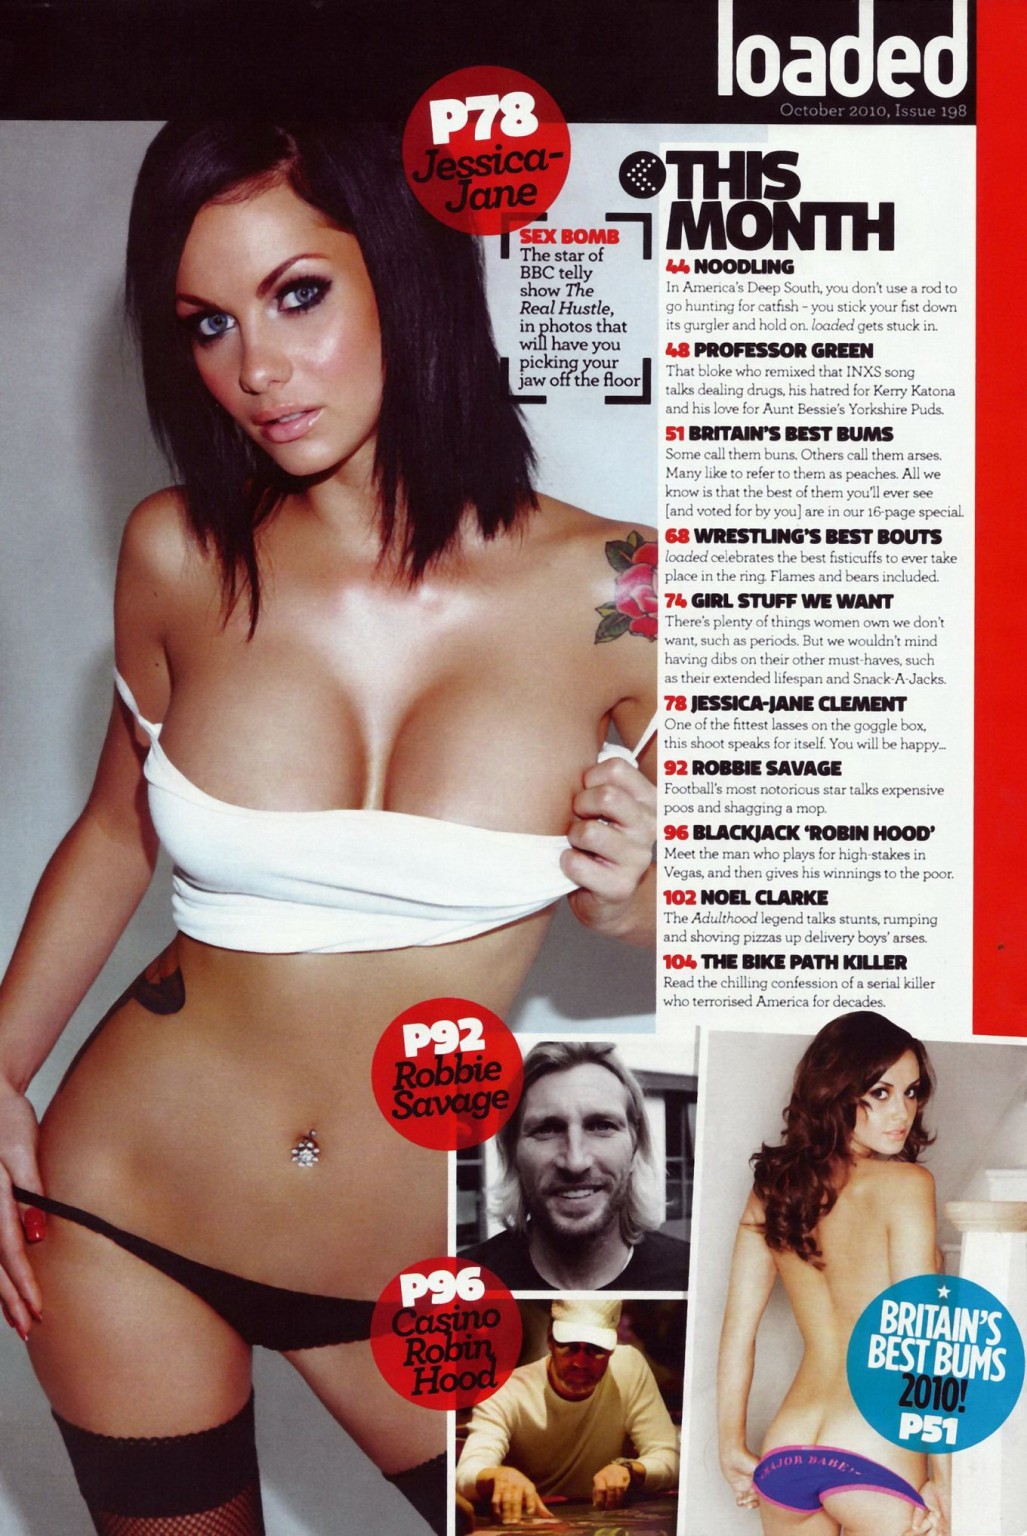 Jessica jane clement vollbusig in Dessous für 'sex bomb' Fotoshooting von loaded magazin
 #75332509